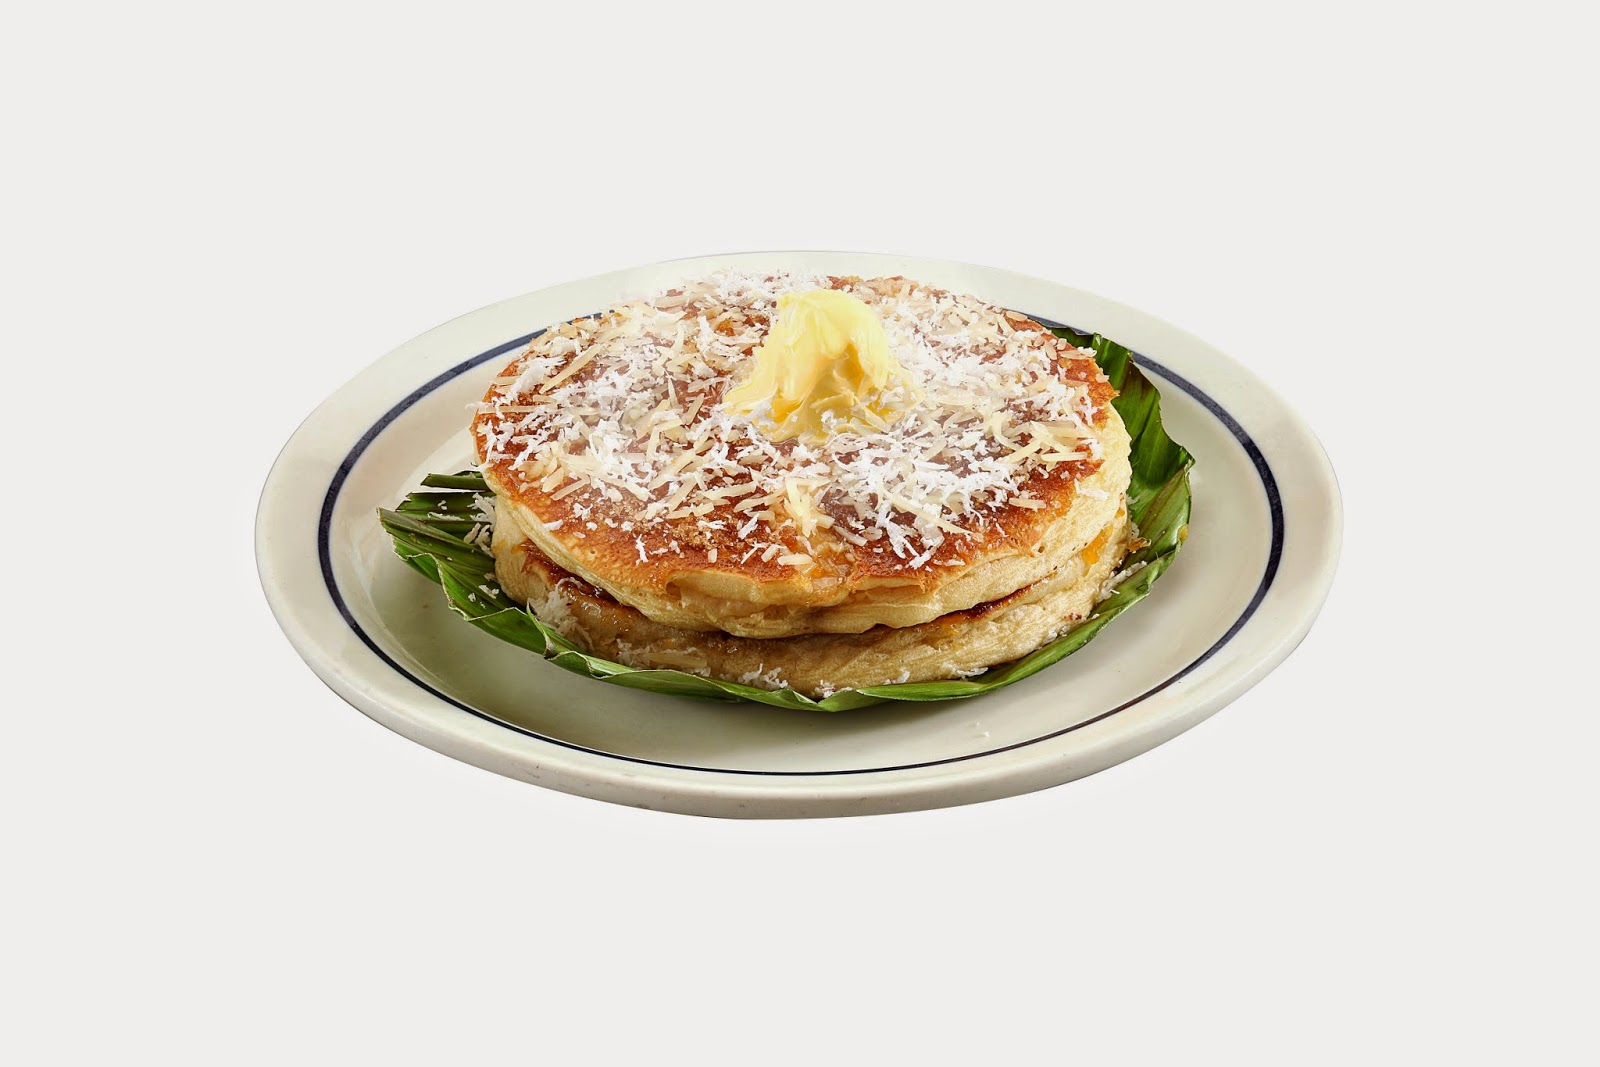 IHOP Pancakes Copycat - Onion Rings & Things